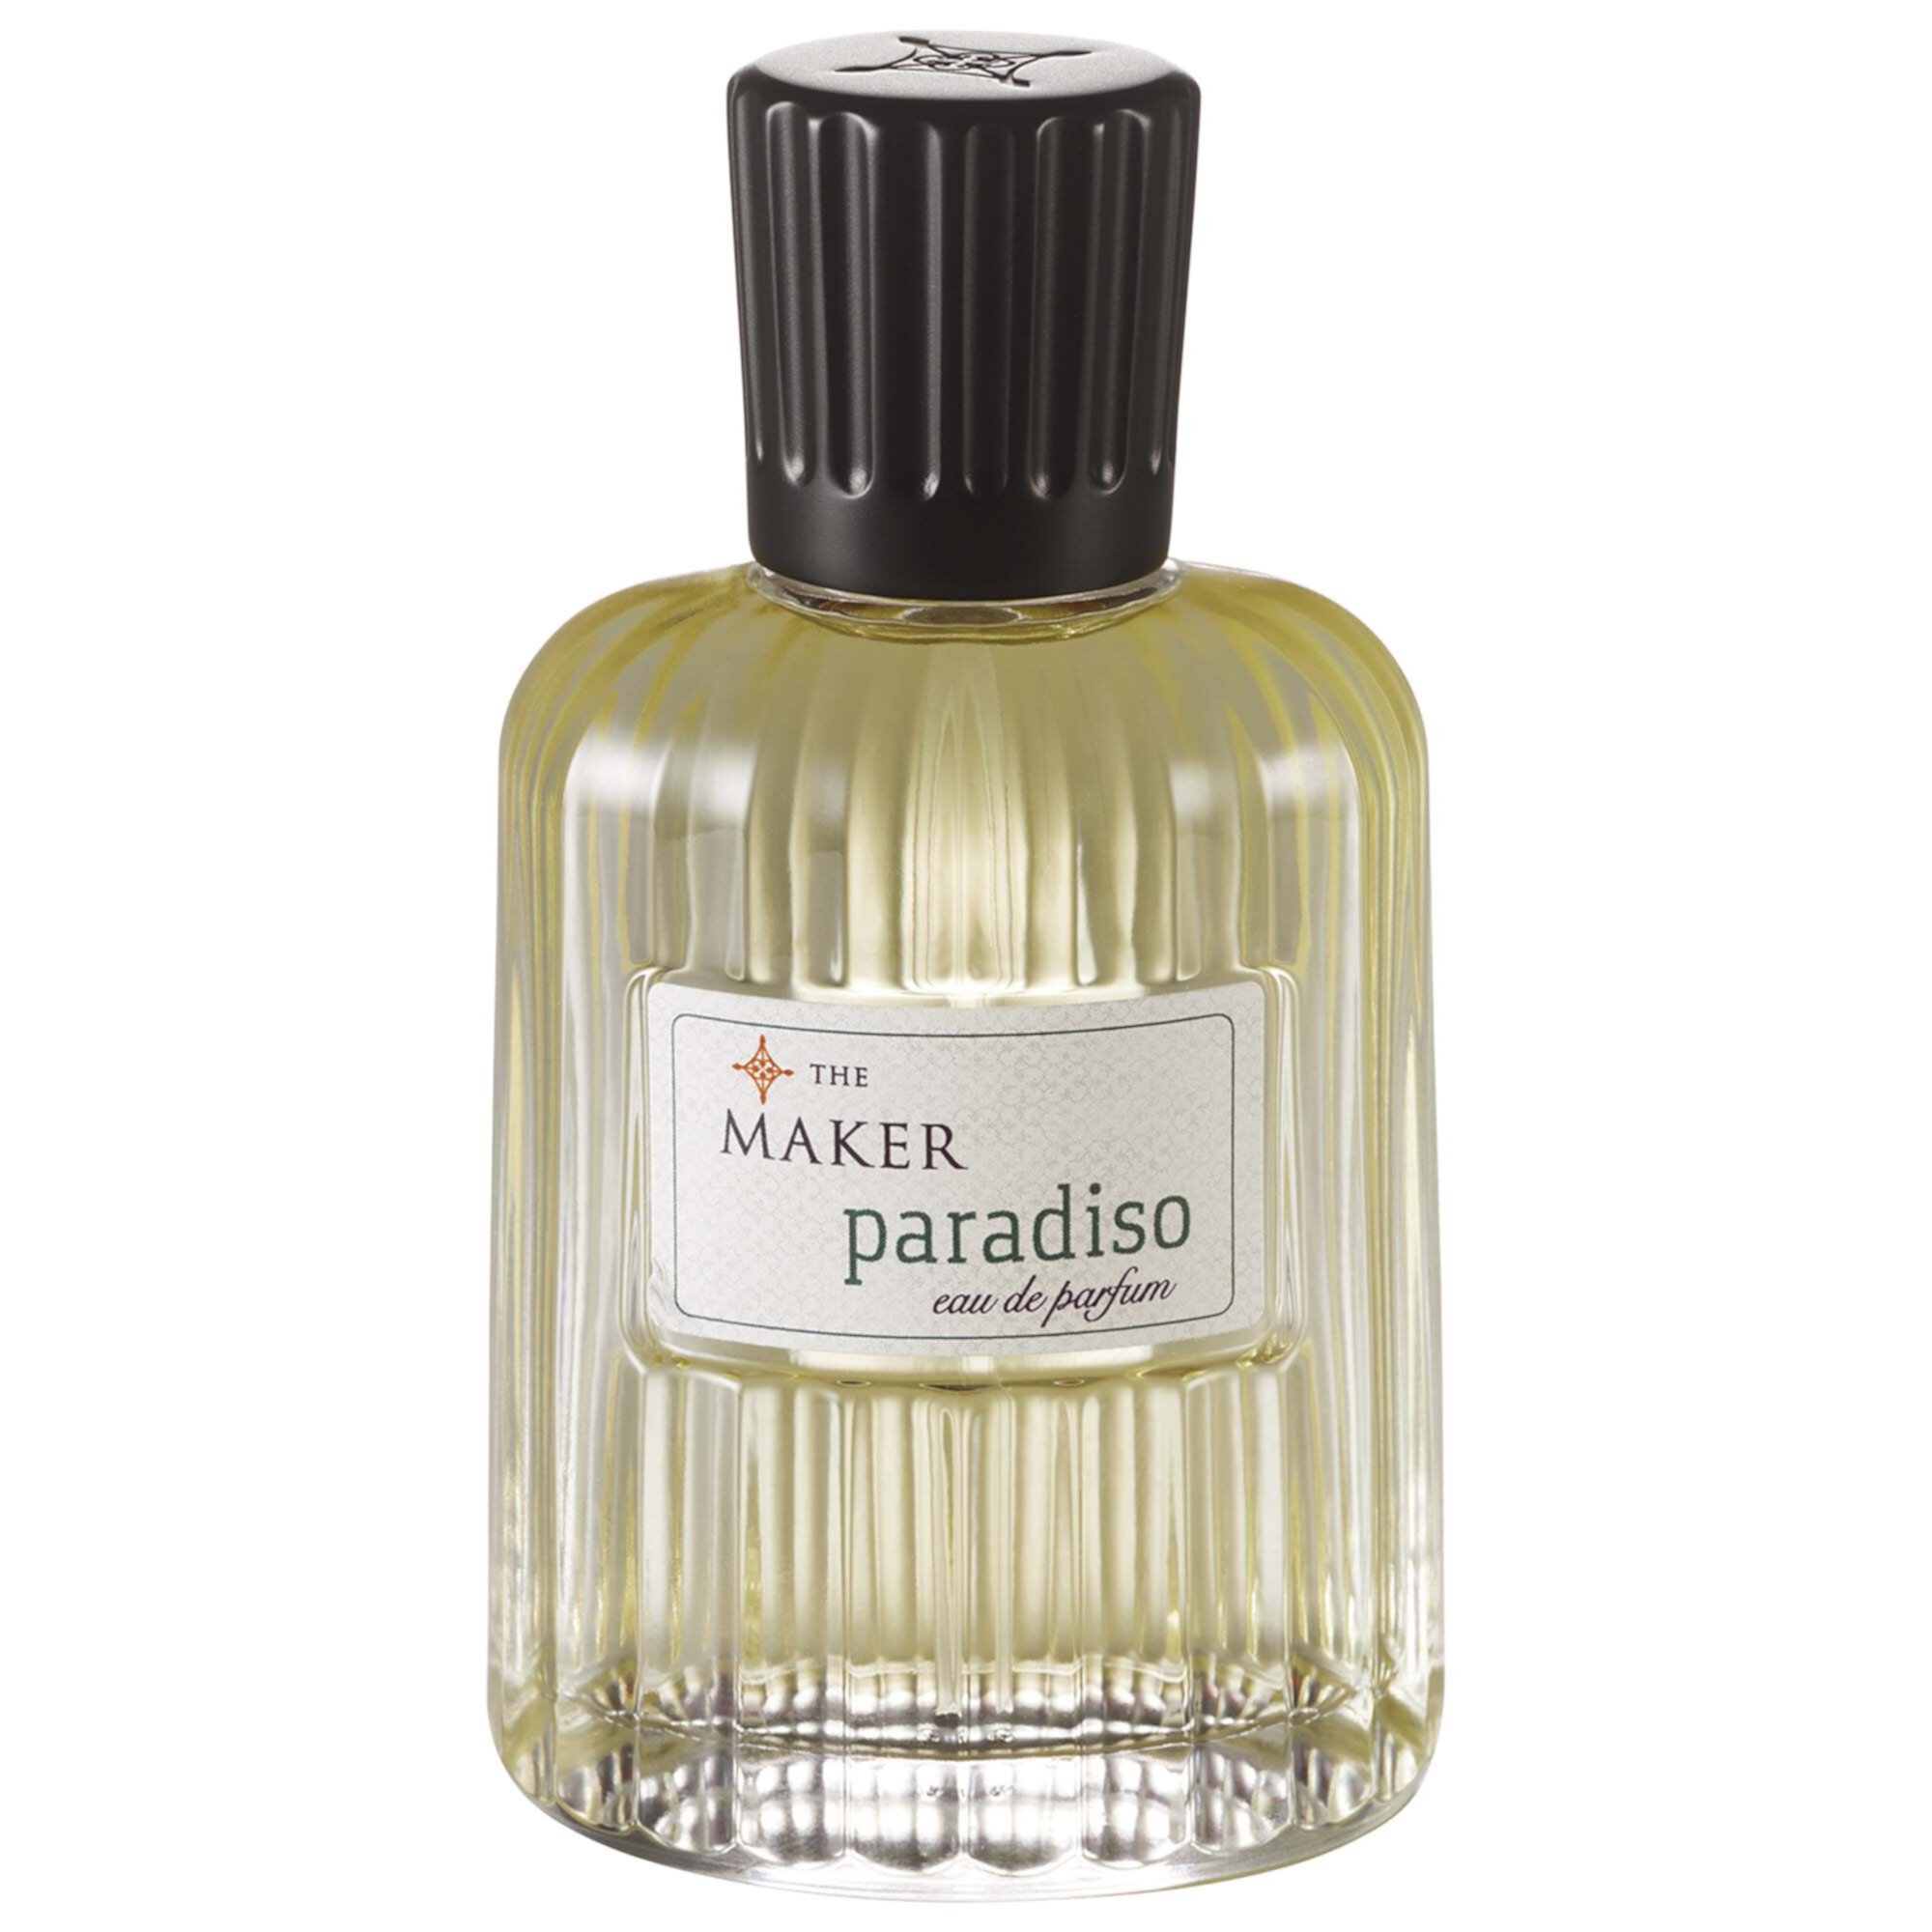 Paradiso Eau de Parfum The Maker